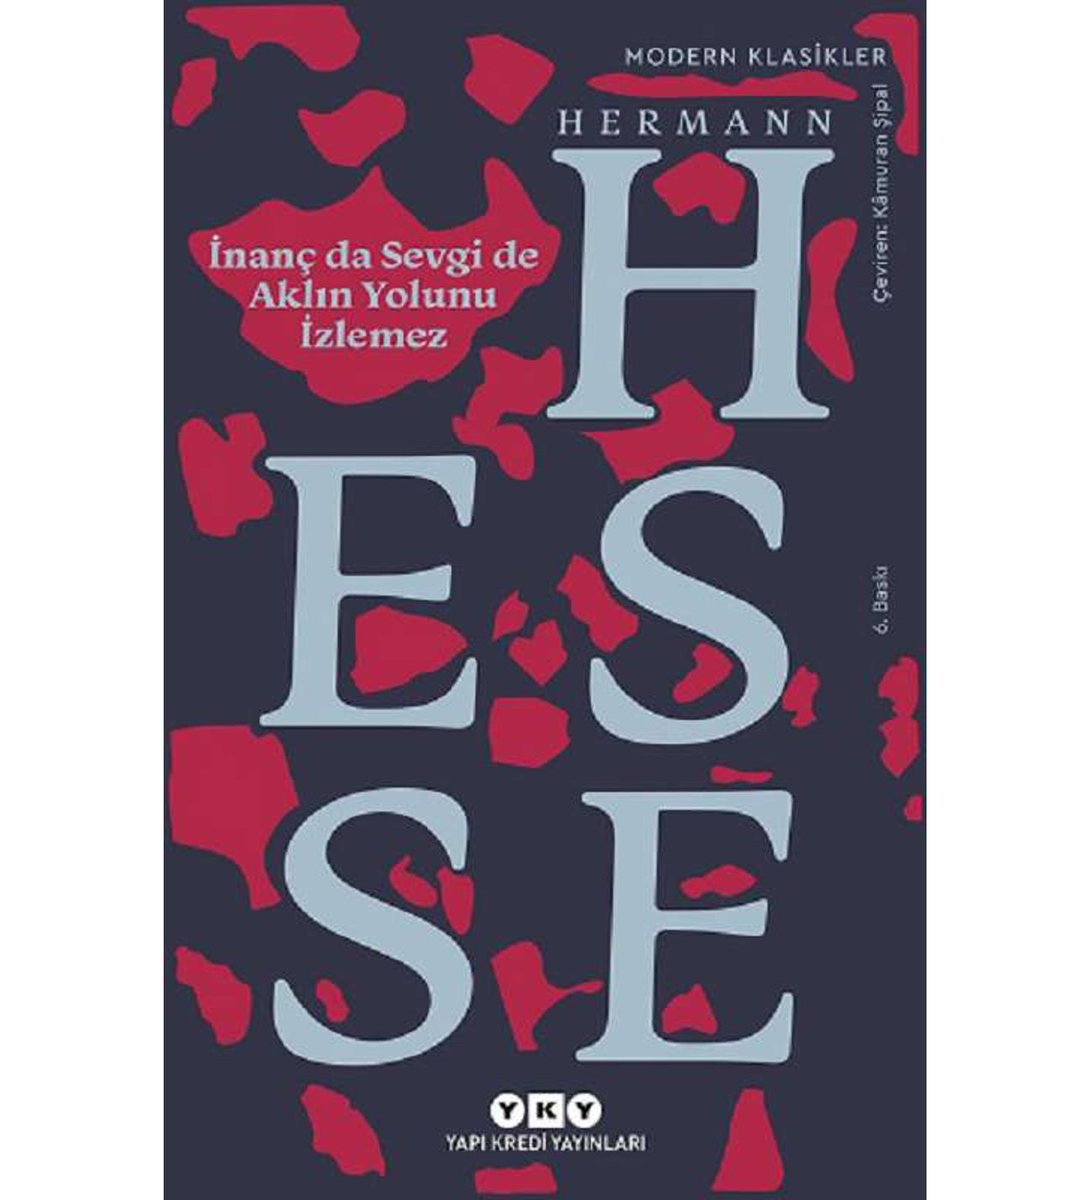 İnanç da Sevgi de aklın yolunu izlemez...

Herman Hesse 

#kitap